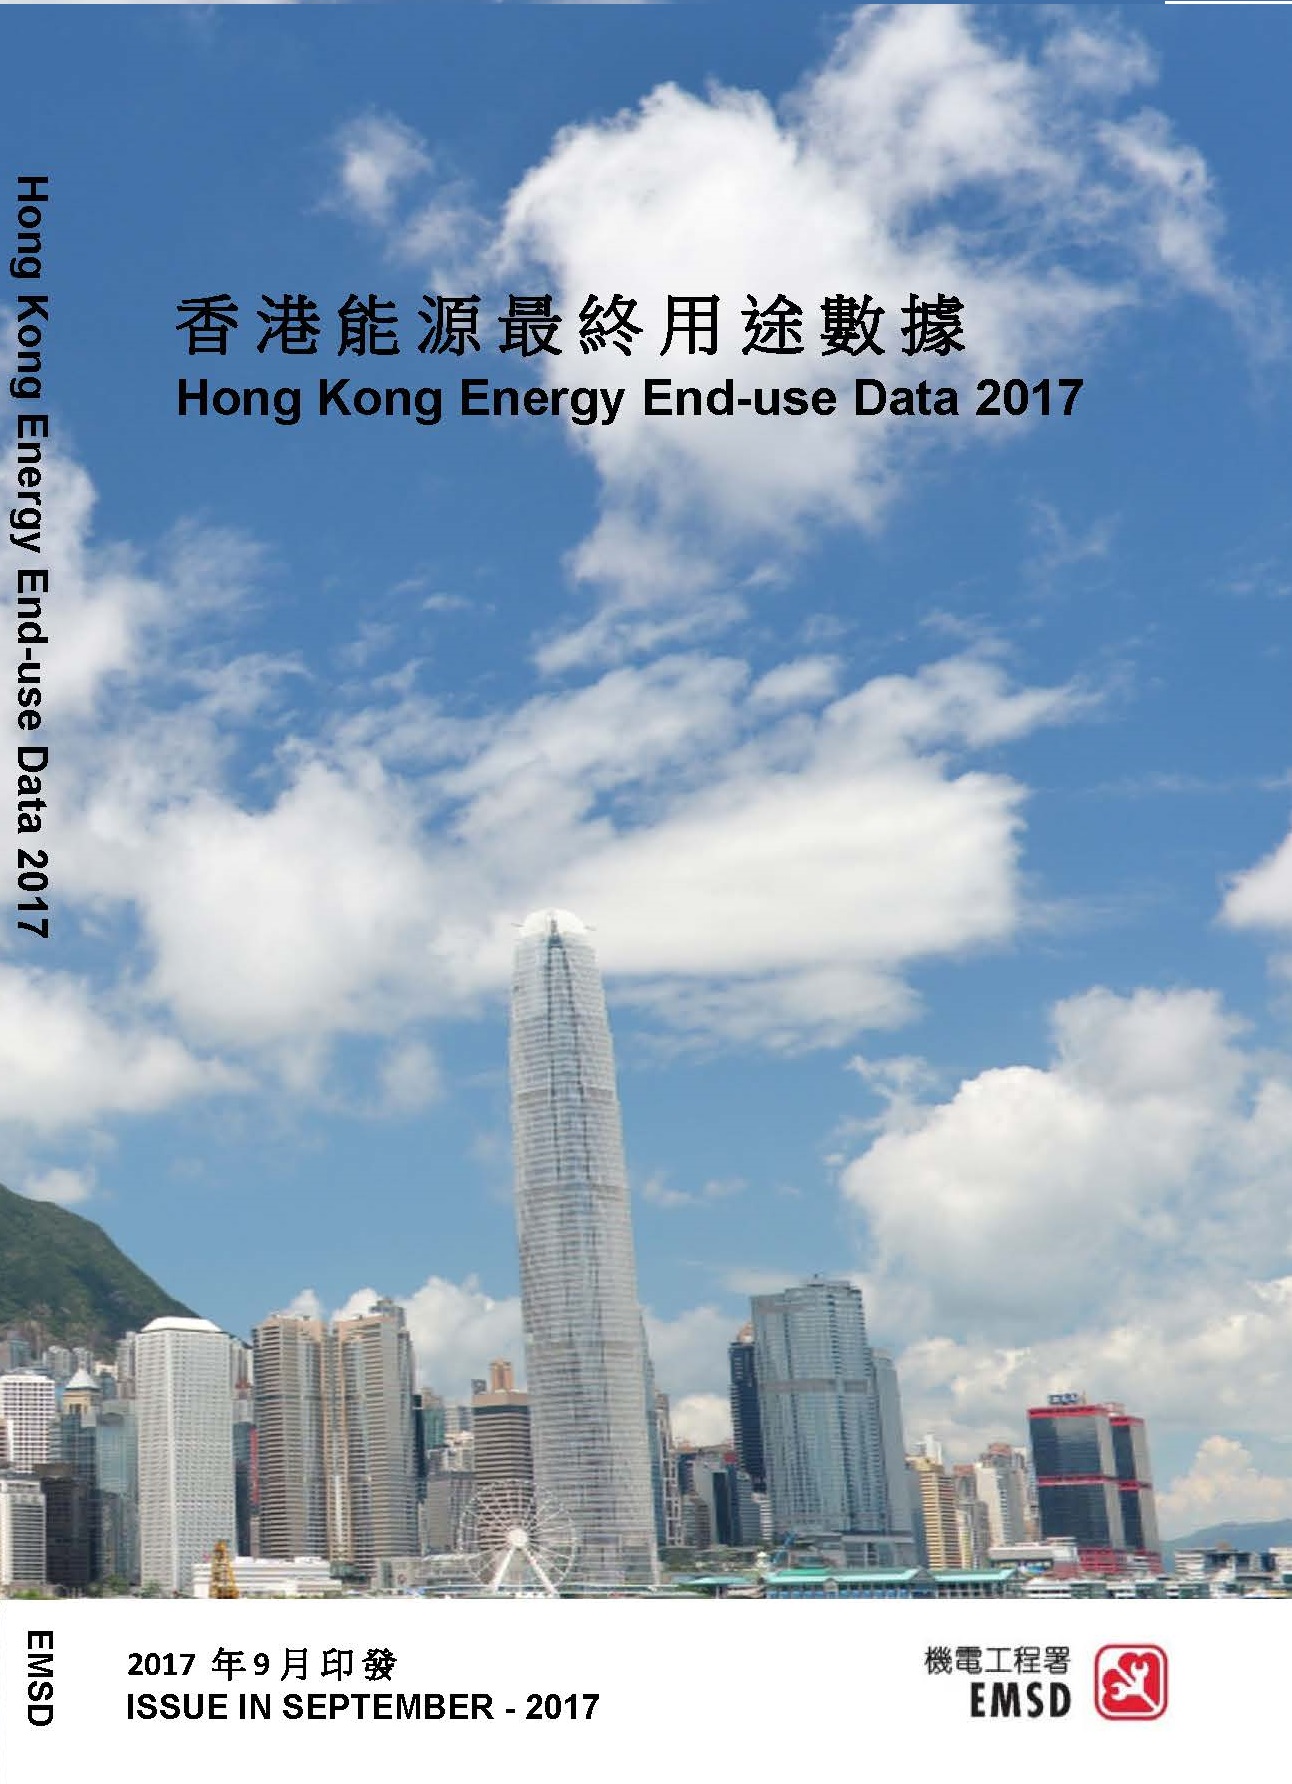 「香港能源最終用途數據2017」
